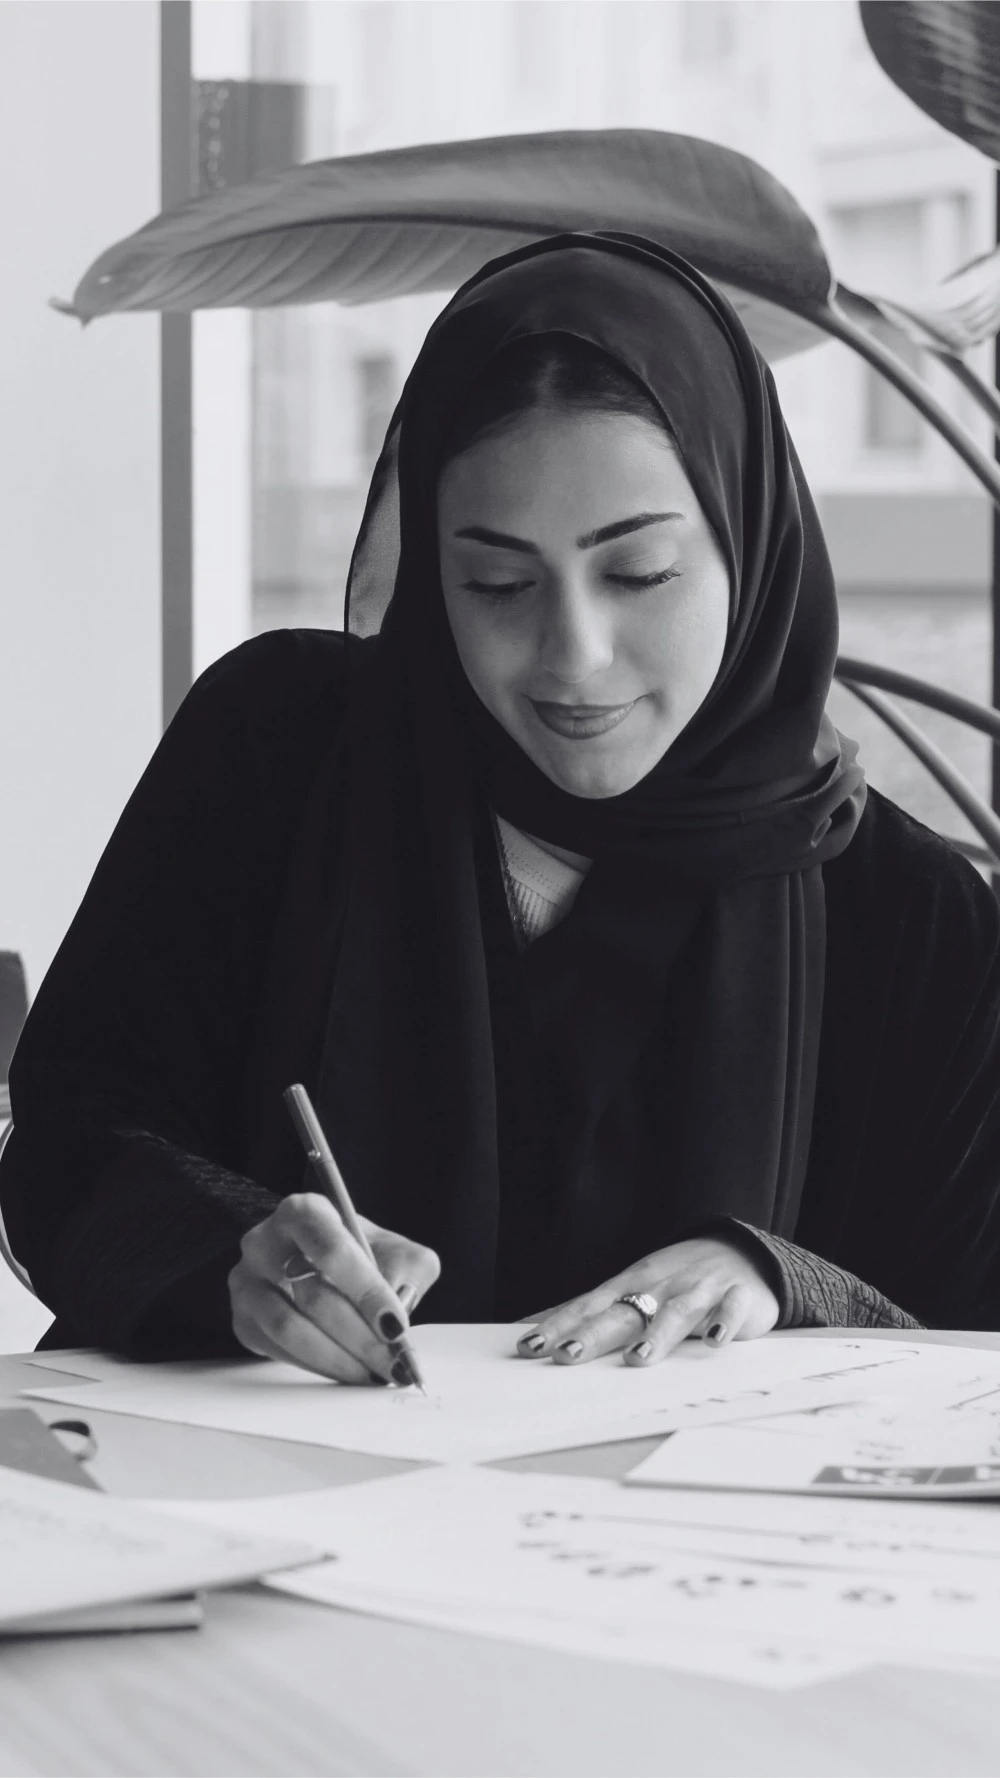 دار شوميه تتعاون مع M7 لتصميم شعار عربي جديد